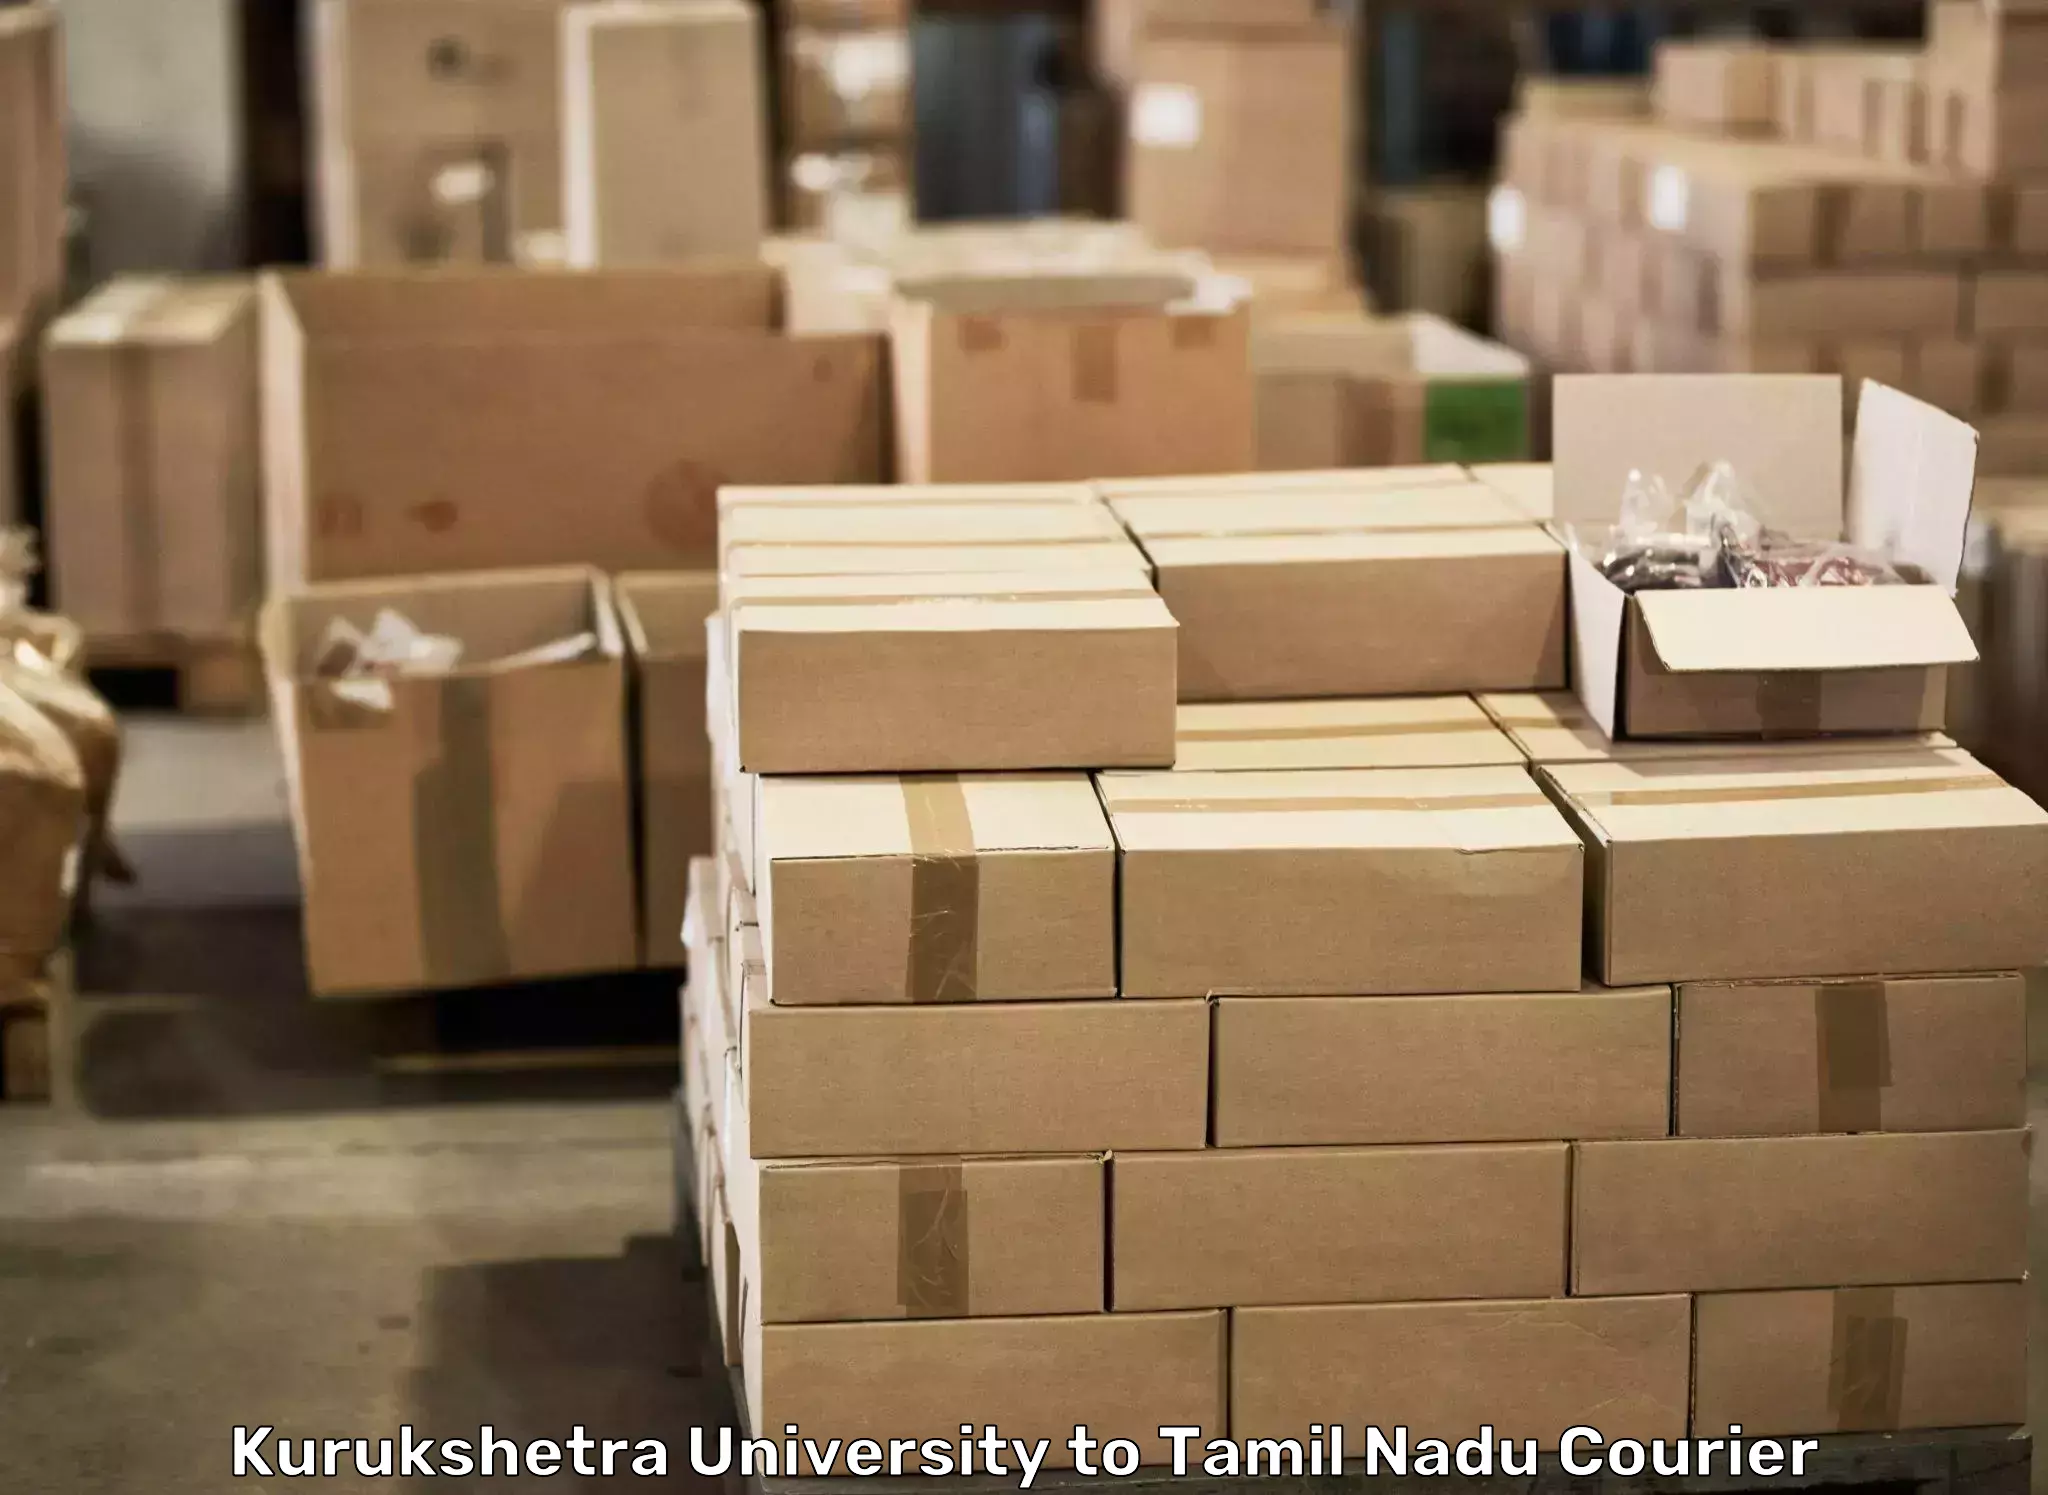 Furniture transport company Kurukshetra University to Villupuram